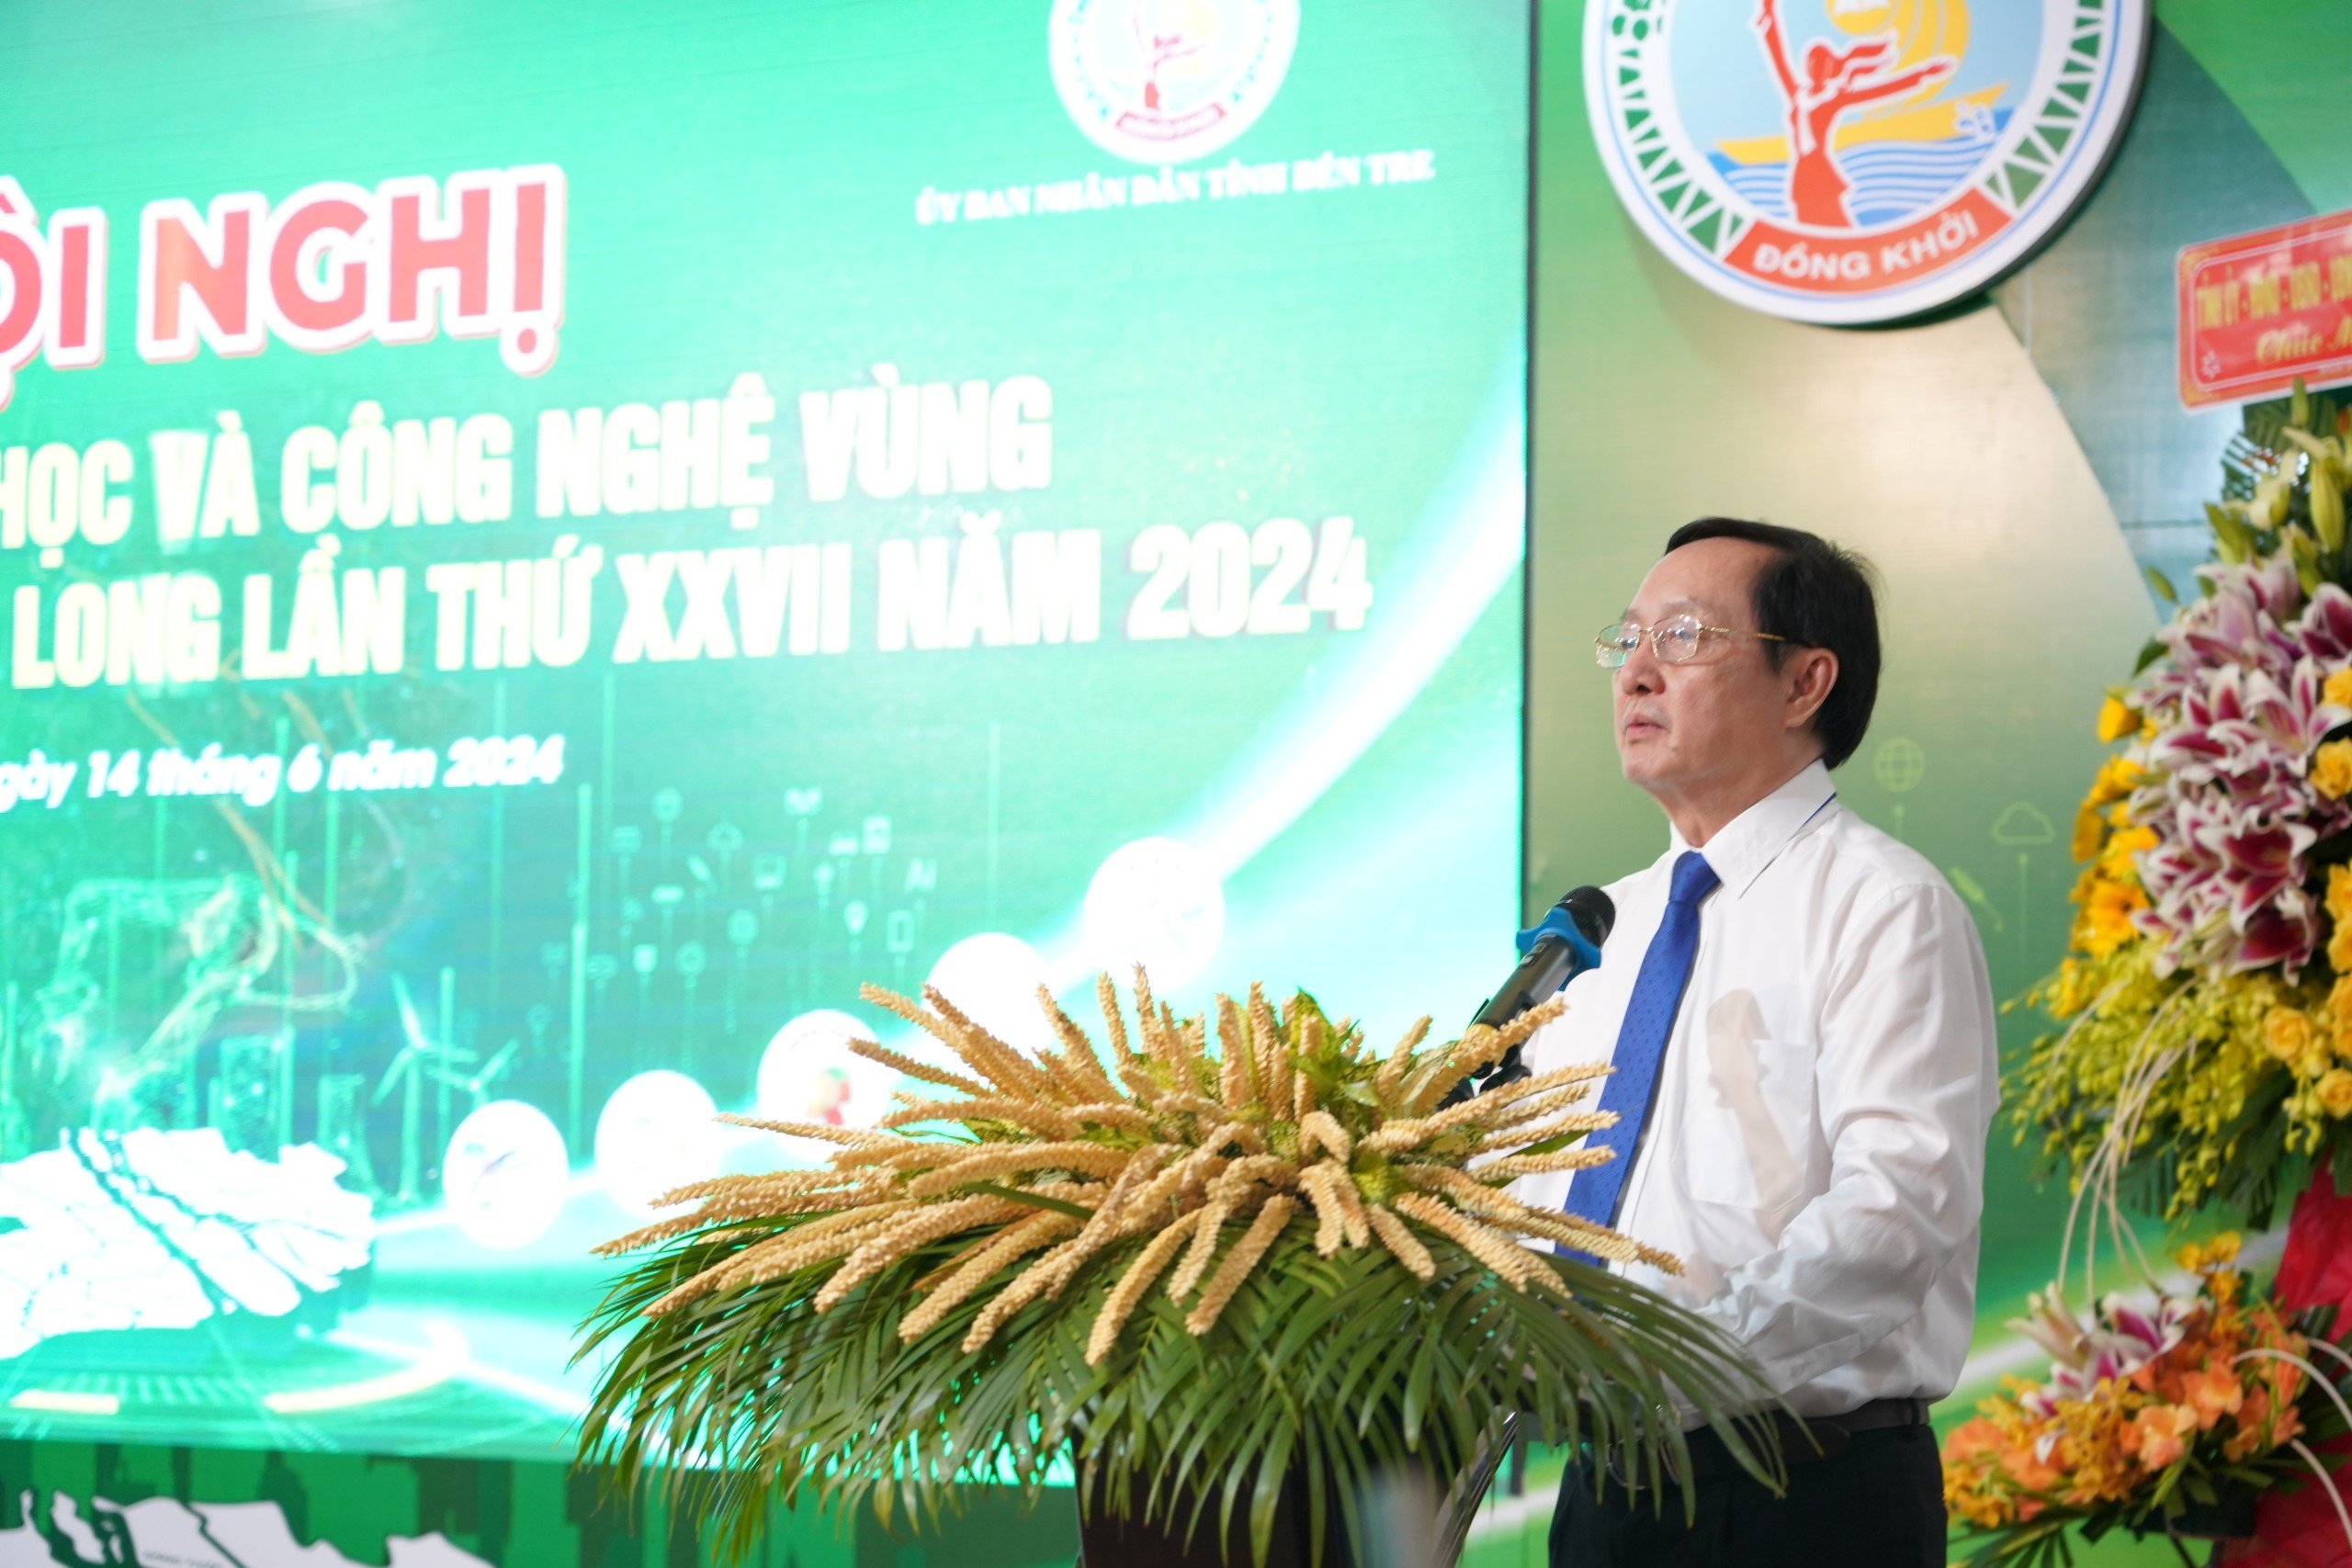 Bộ trưởng Huỳnh Thành Đạt: Khoa học công nghệ tại ĐBSCL cần làm quyết liệt, thực chất hơn- Ảnh 1.